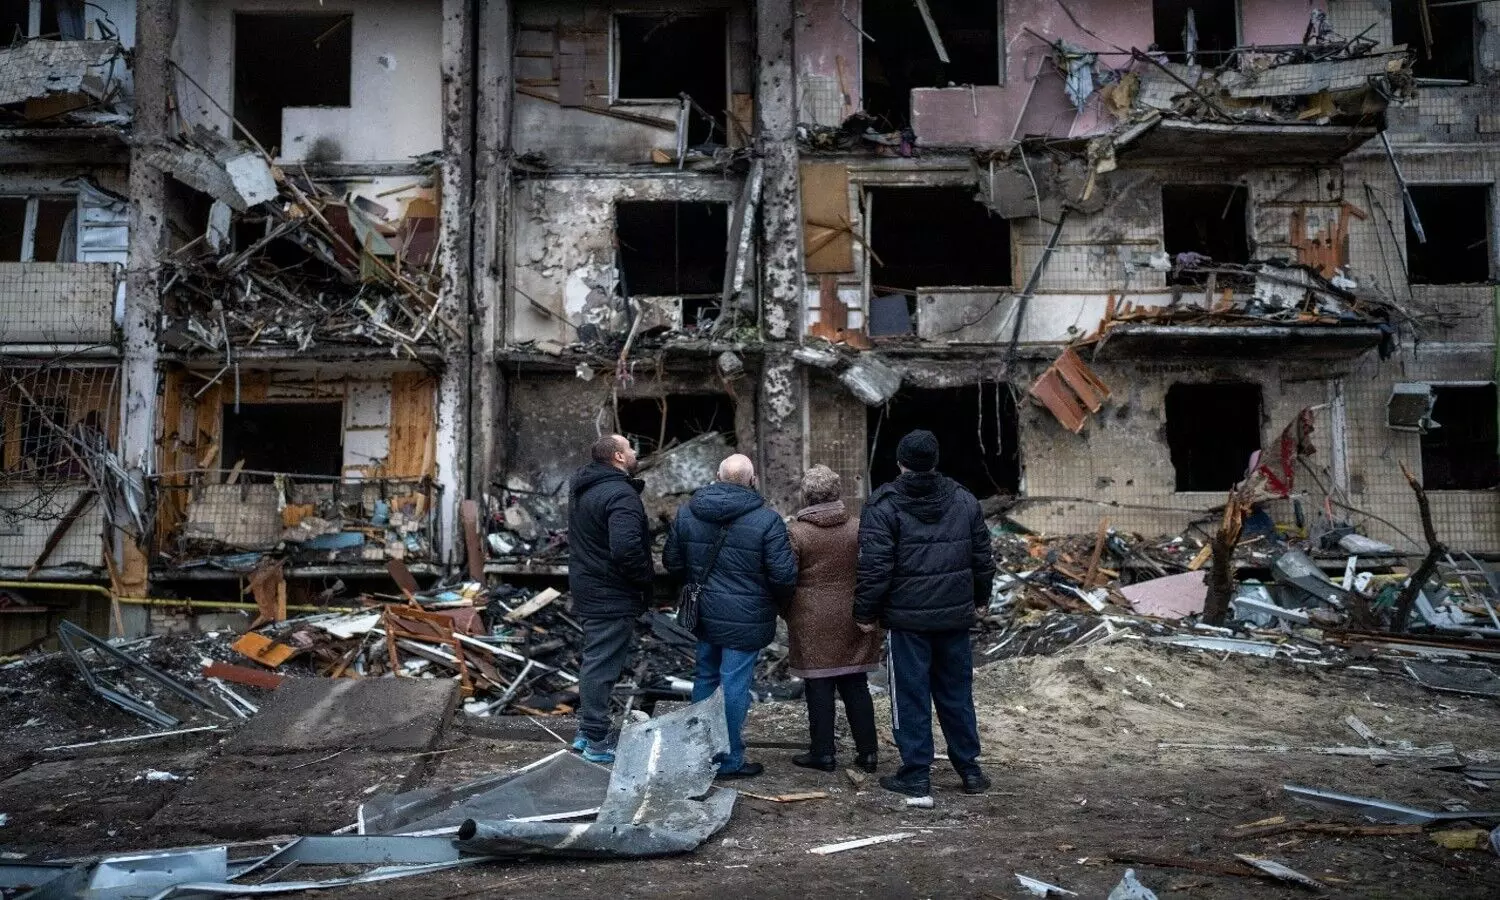 devastation in Ukraine